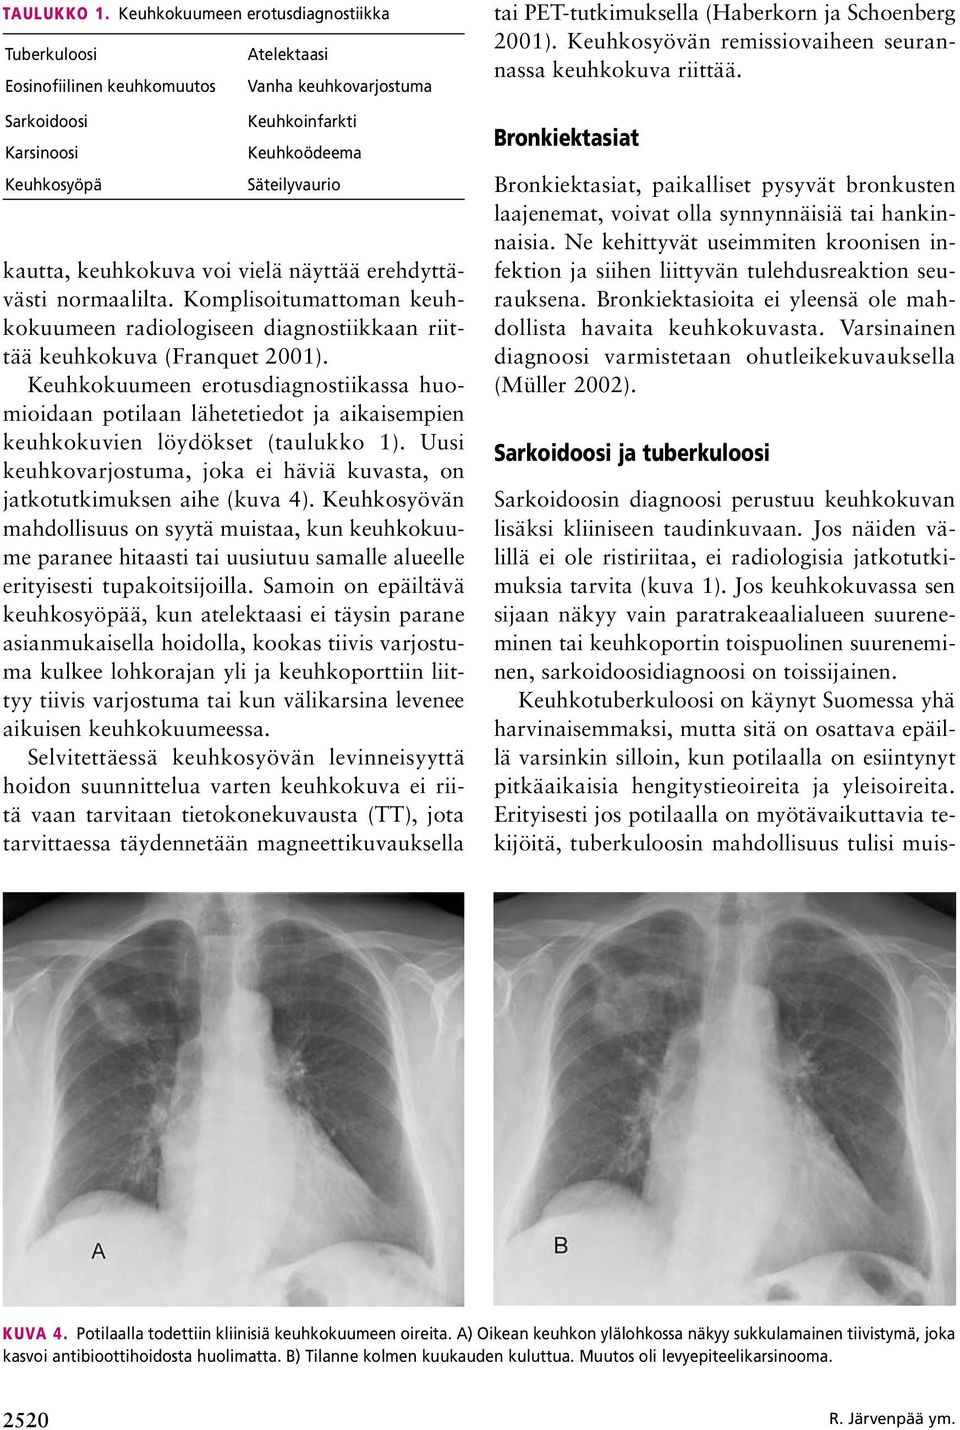 keuhkokuva voi vielä näyttää erehdyttävästi normaalilta. Komplisoitumattoman keuhkokuumeen radiologiseen diagnostiikkaan riittää keuhkokuva (Franquet 2001).